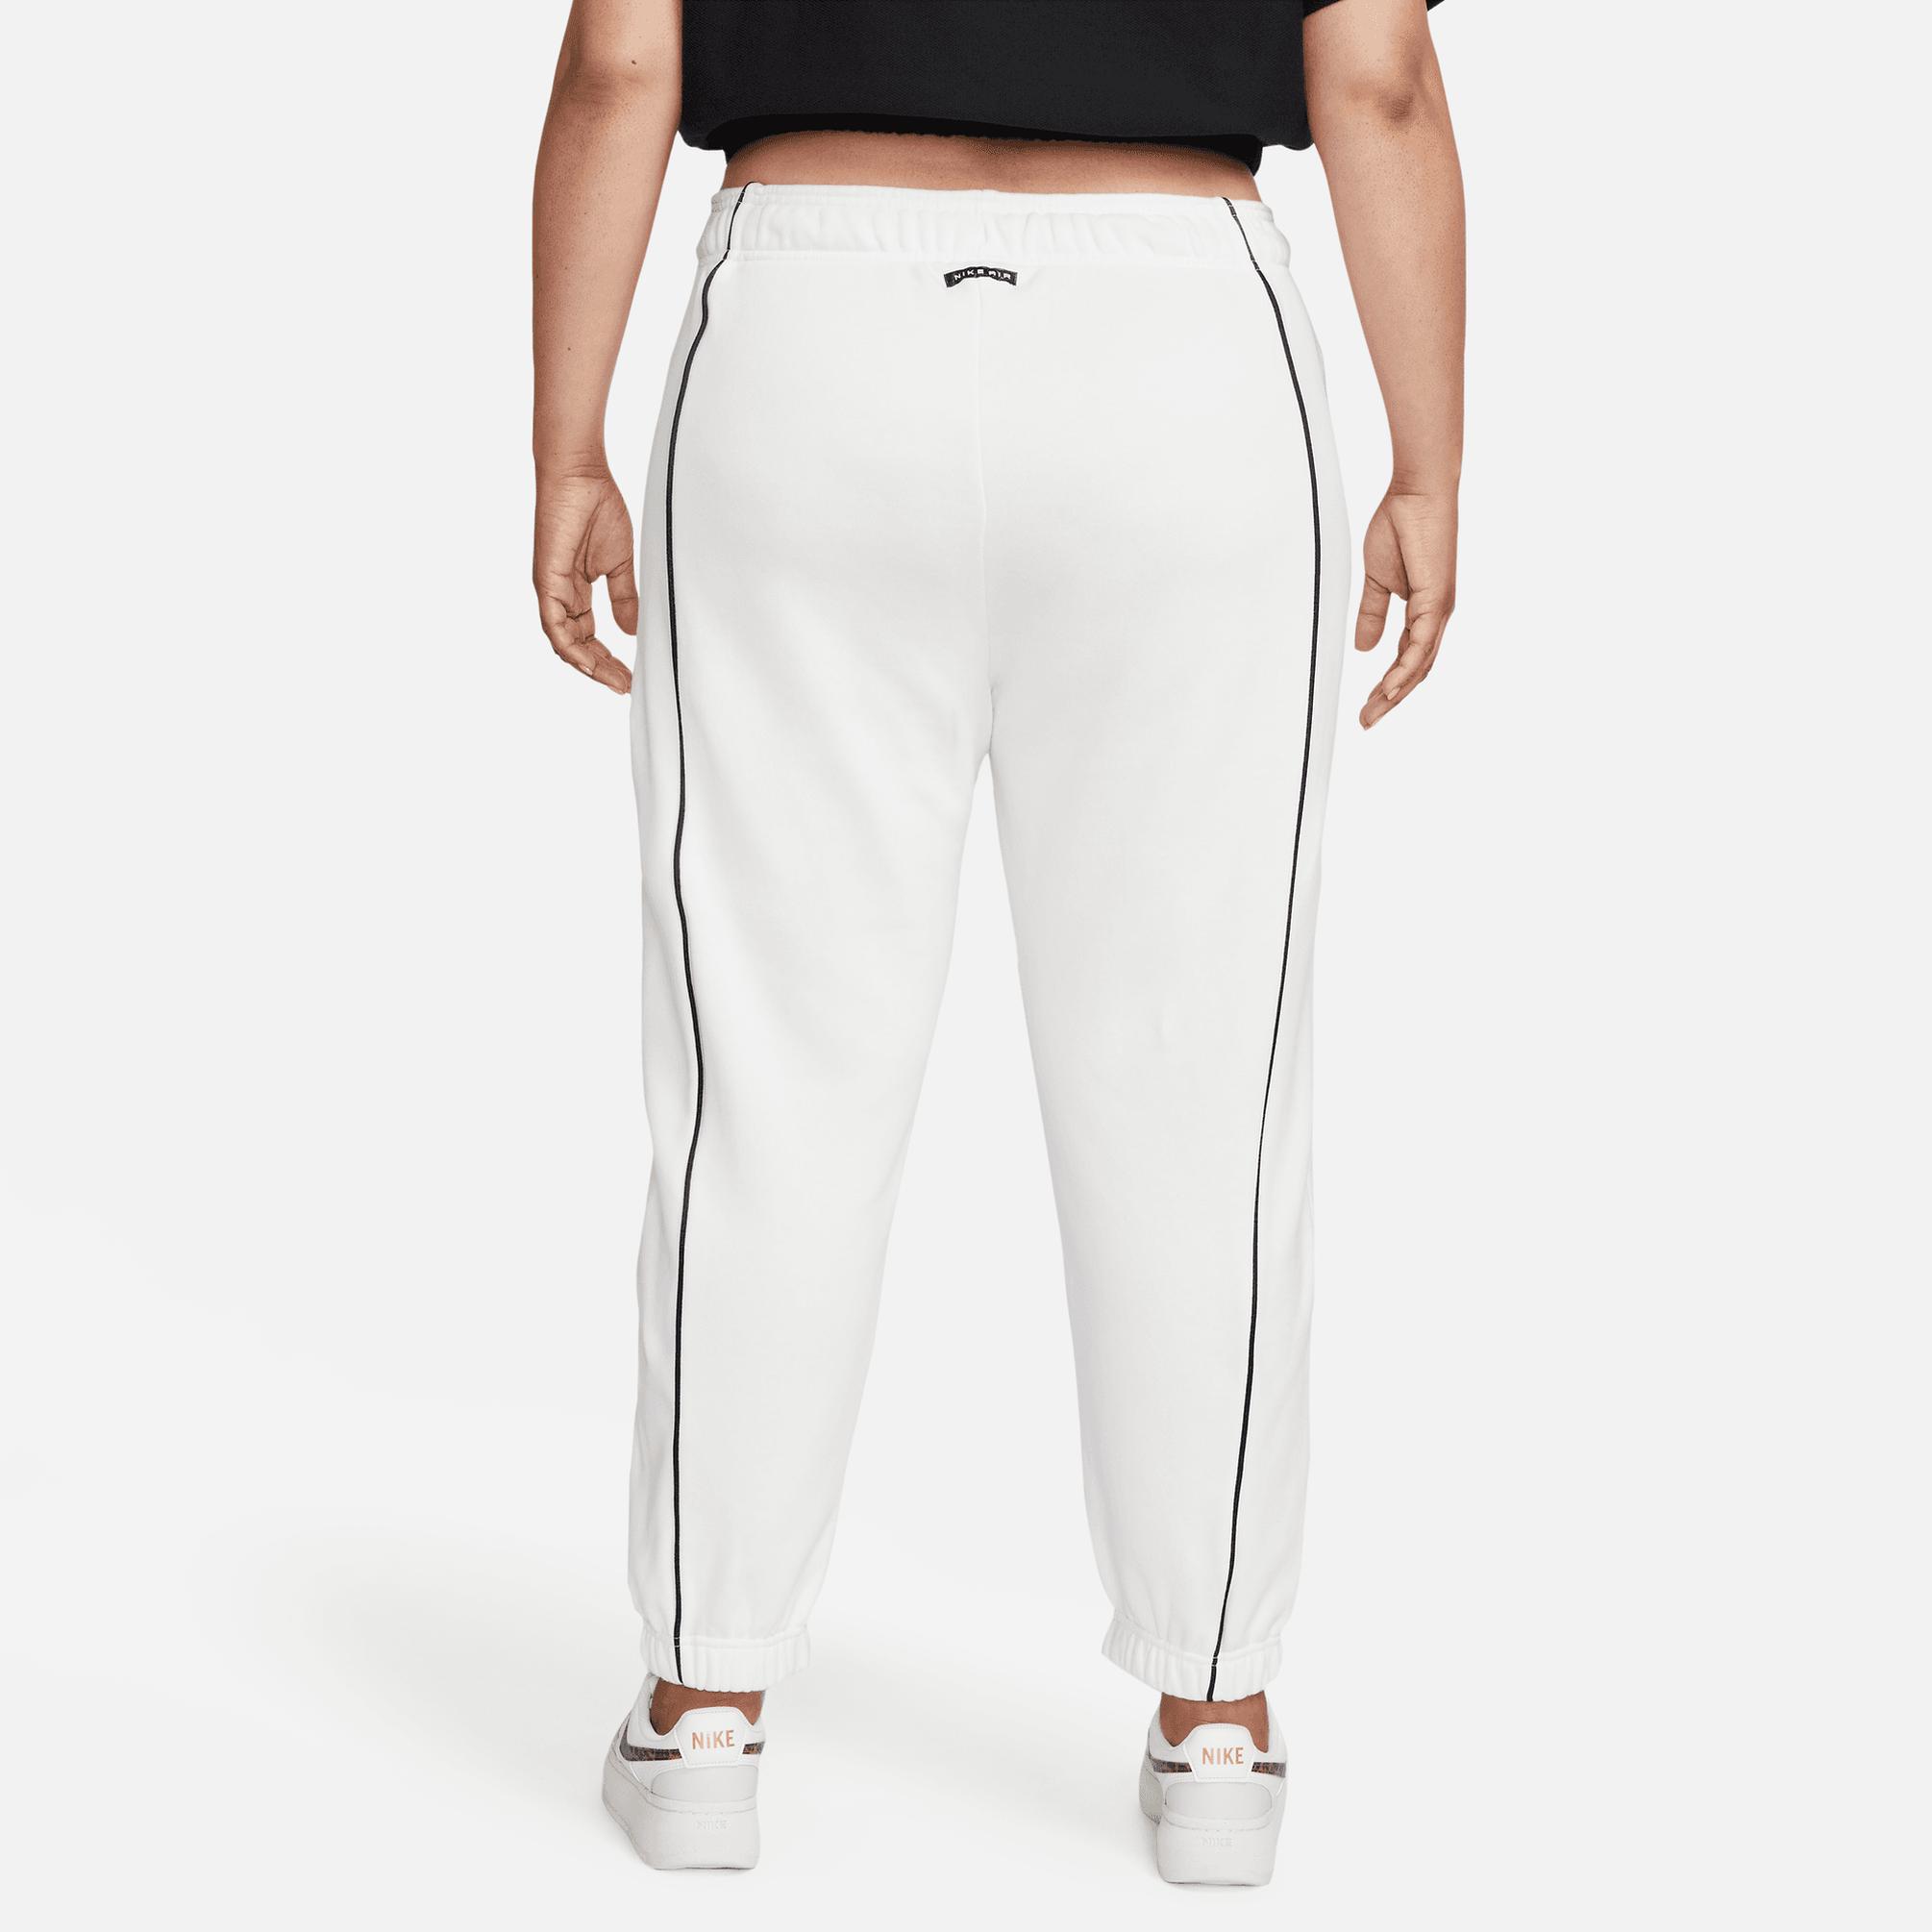  Nike Sportswear Kadın Beyaz Eşofman Altı